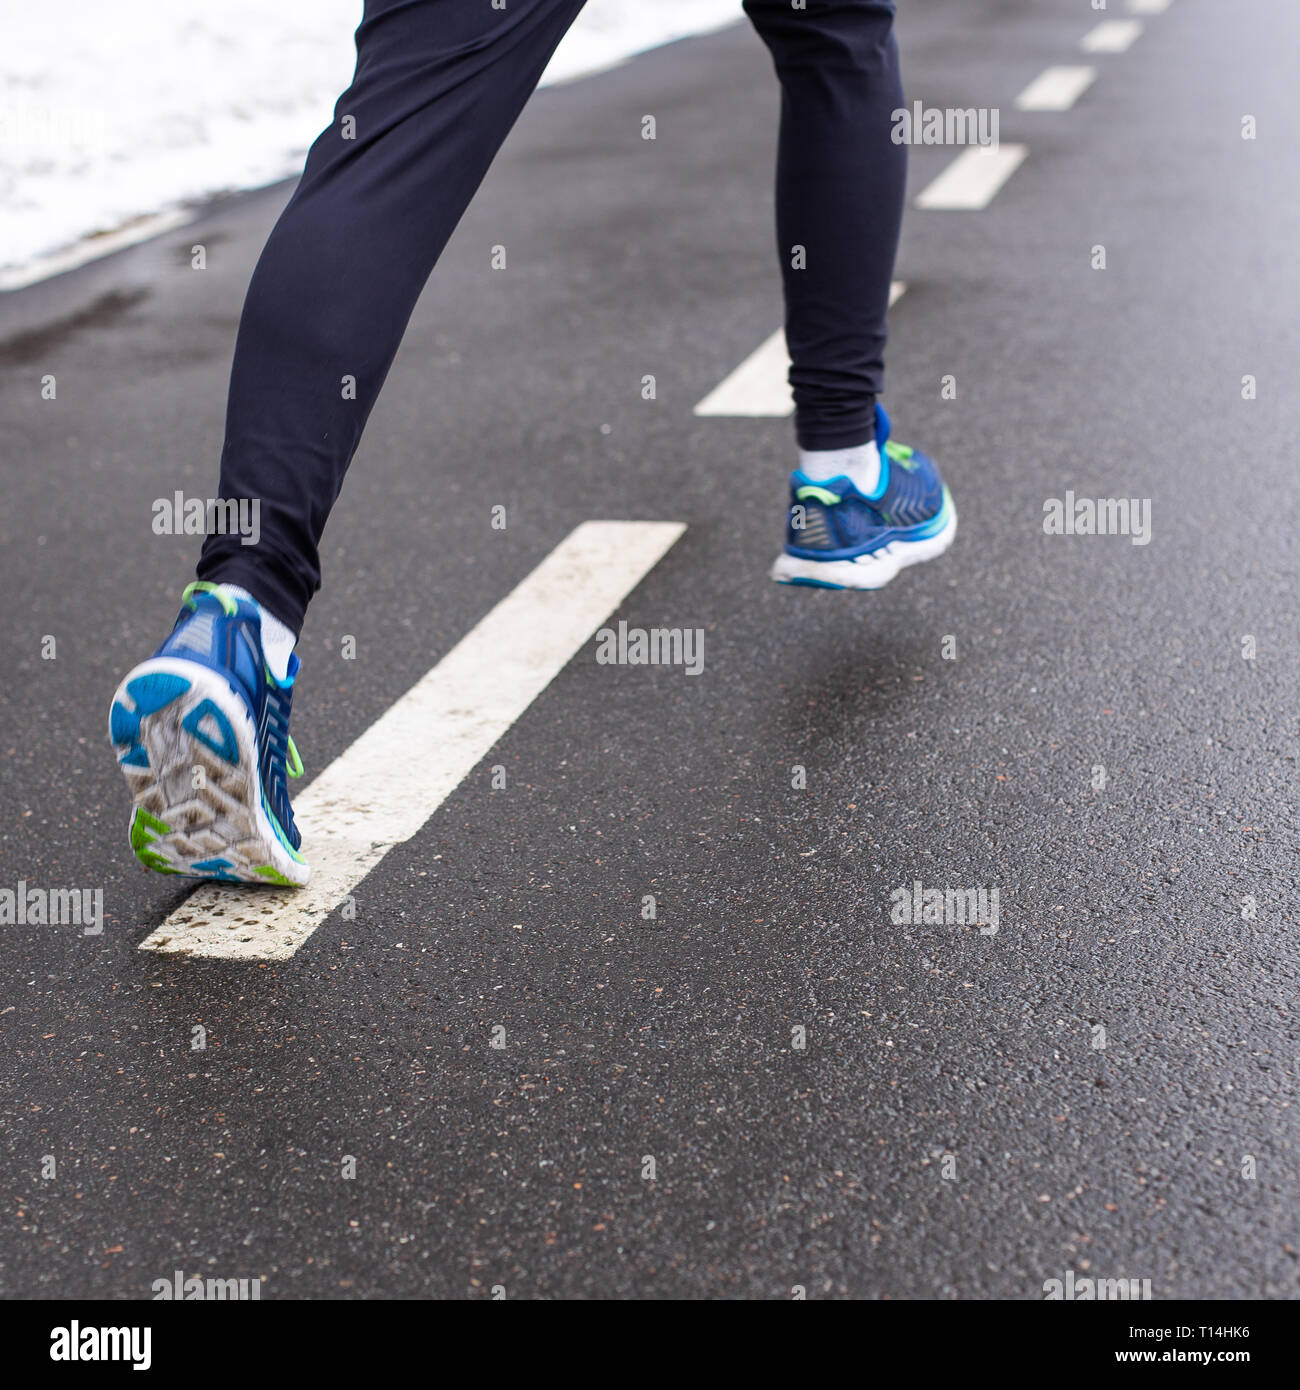 Les jambes de l'homme en train de courir dans des chaussures de sport et des pantalons Banque D'Images